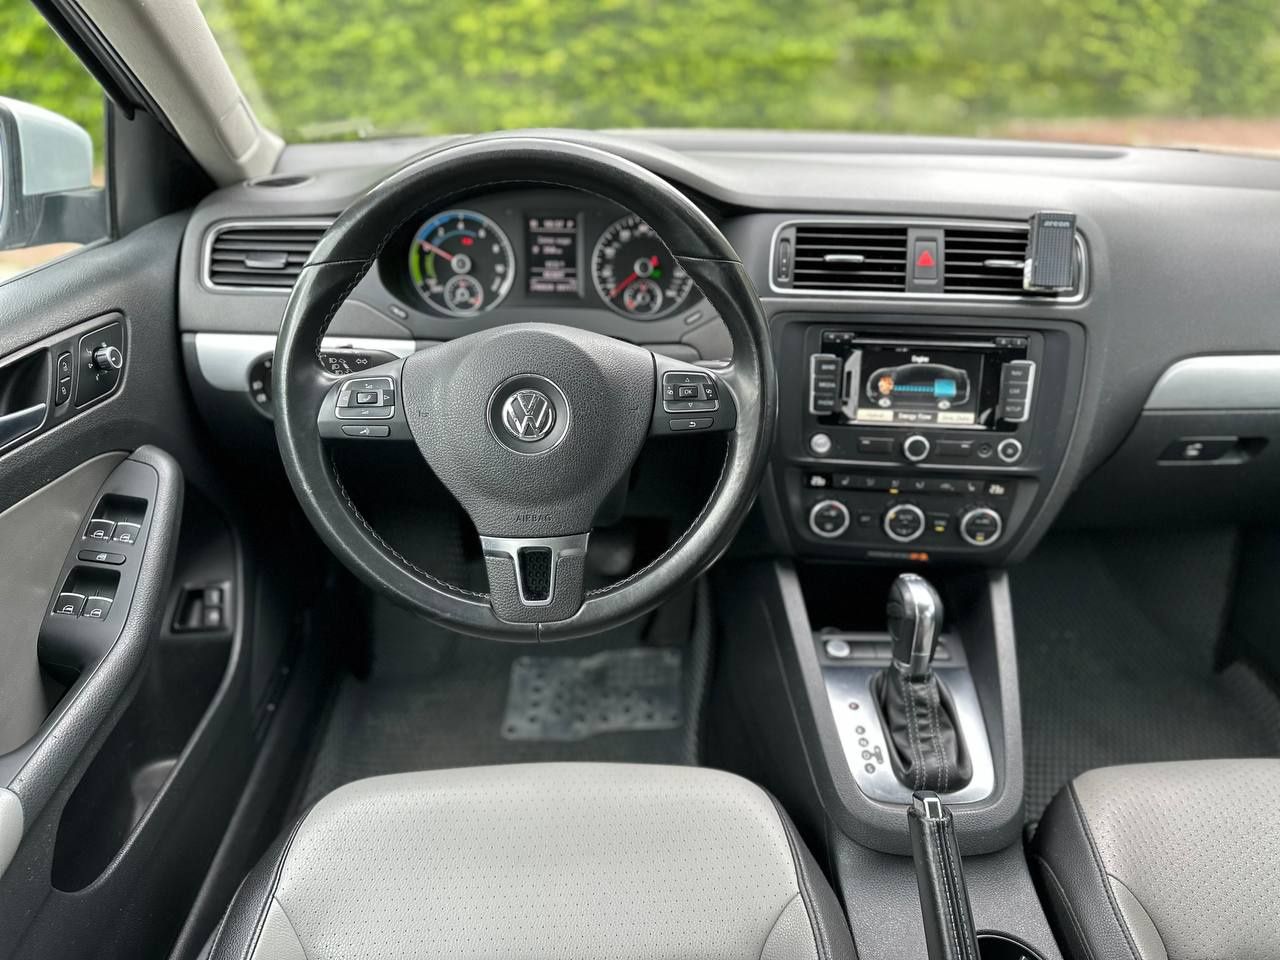 Volkswagen Jetta 2013 року, 1.4 Hybrid, автомат, передній привід, 248т